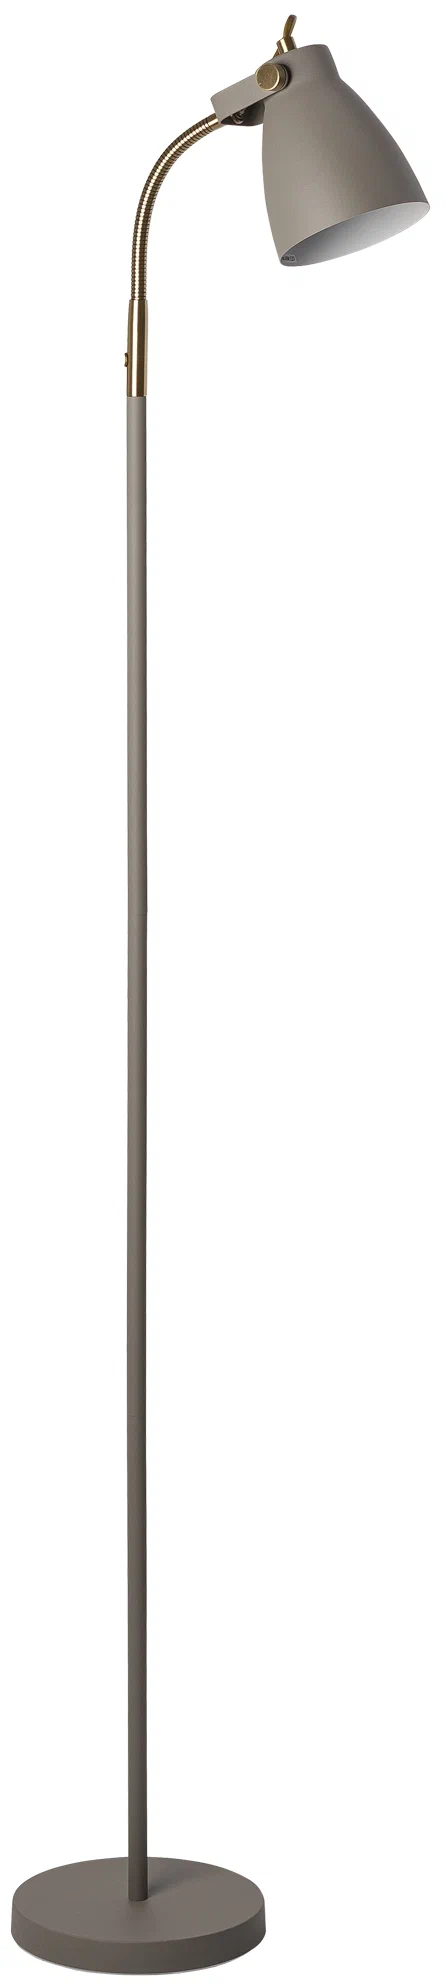 Светильник напольный HT-733GY, ARTSTYLE, серый/ латунь